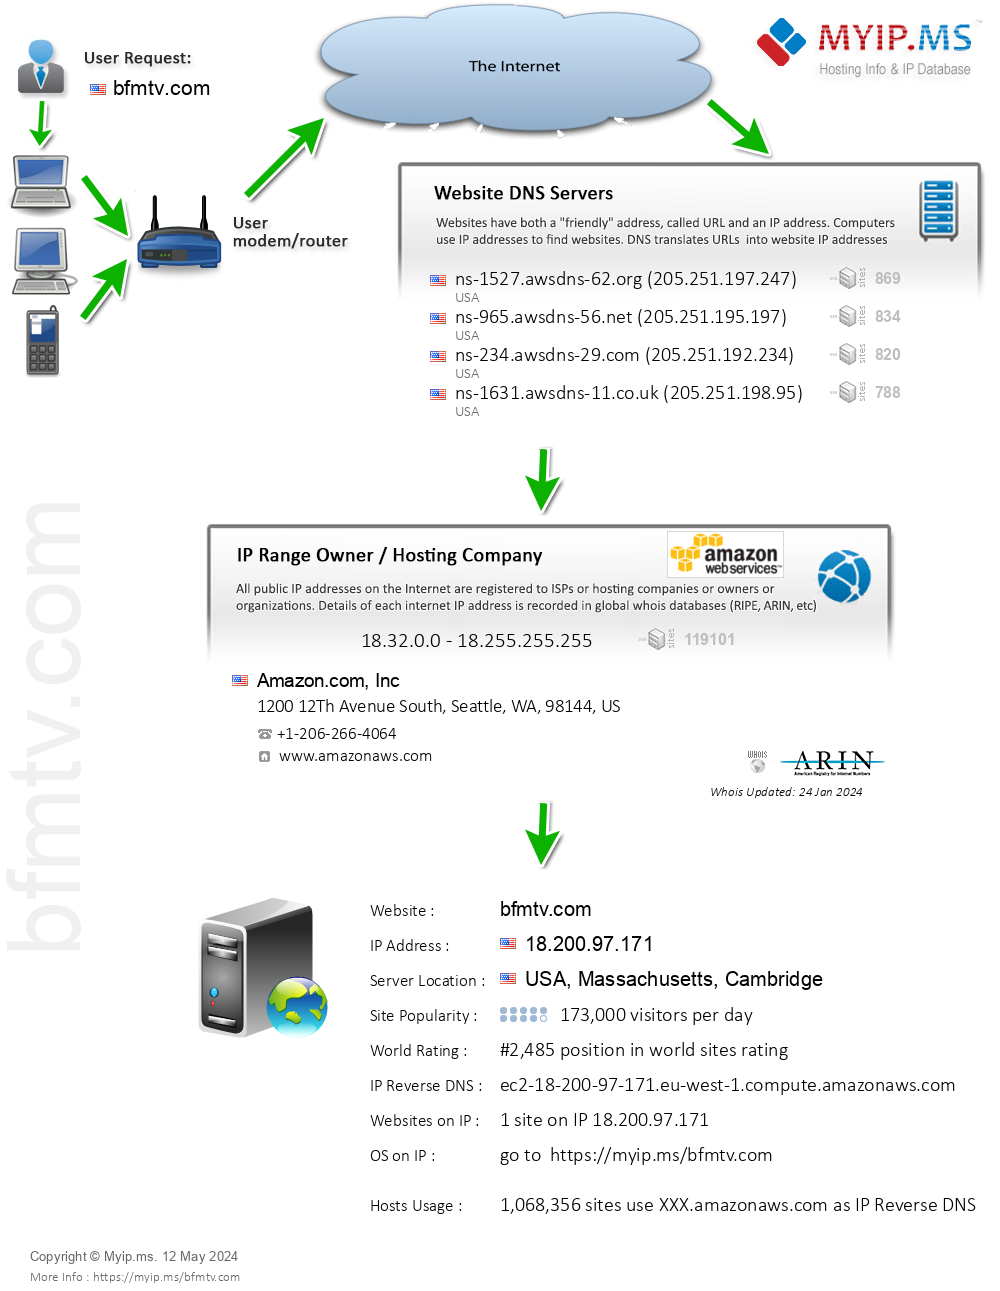 Bfmtv.com - Website Hosting Visual IP Diagram